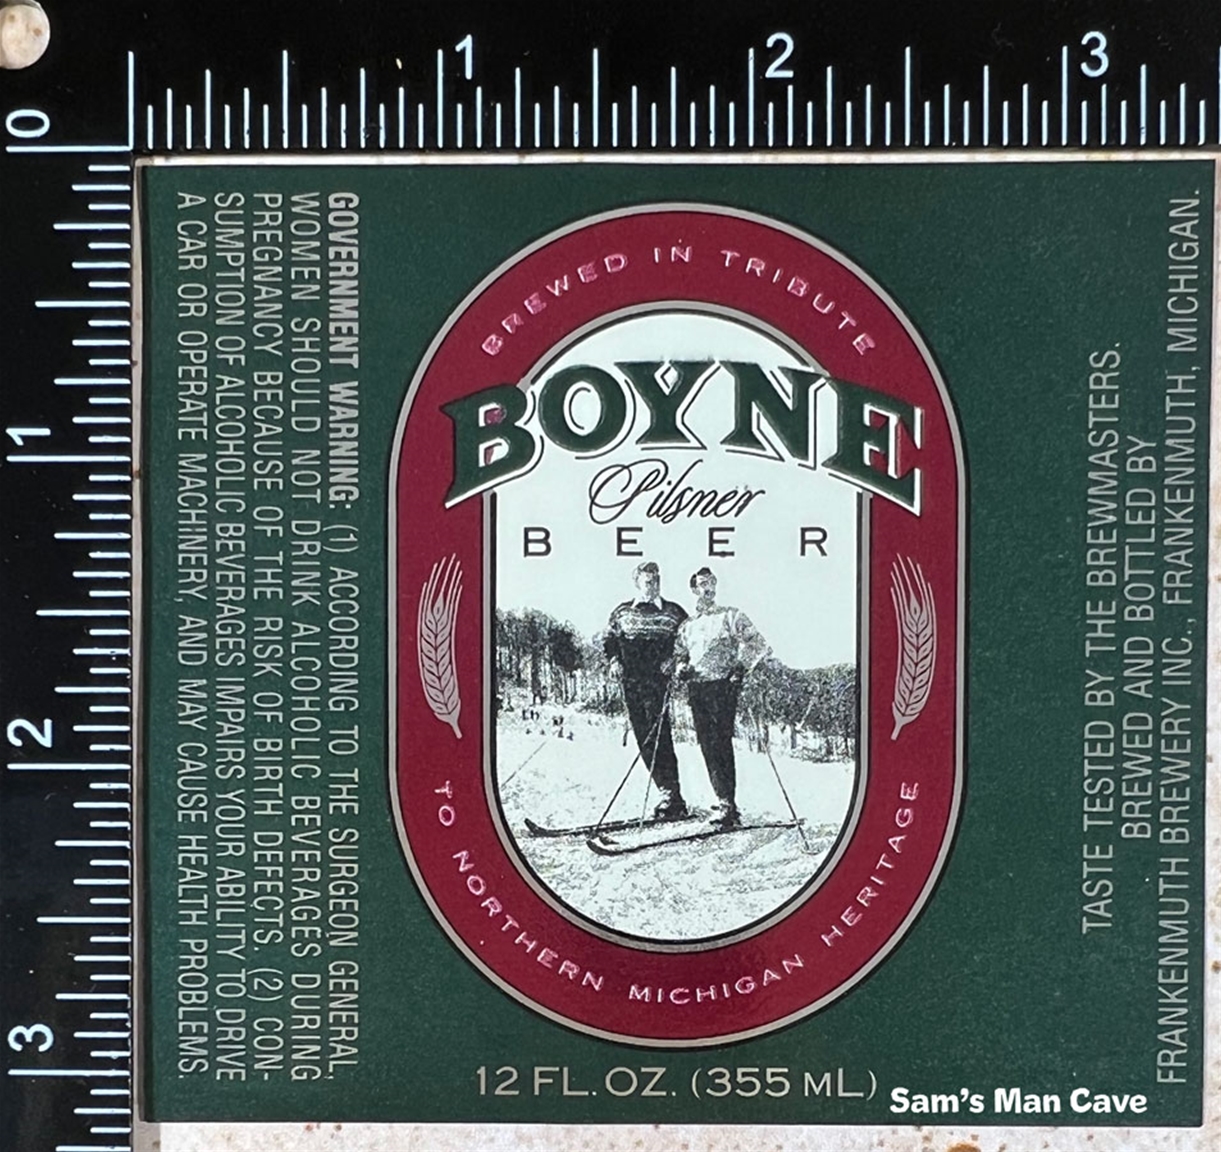 Boyne Pilsner Beer Label